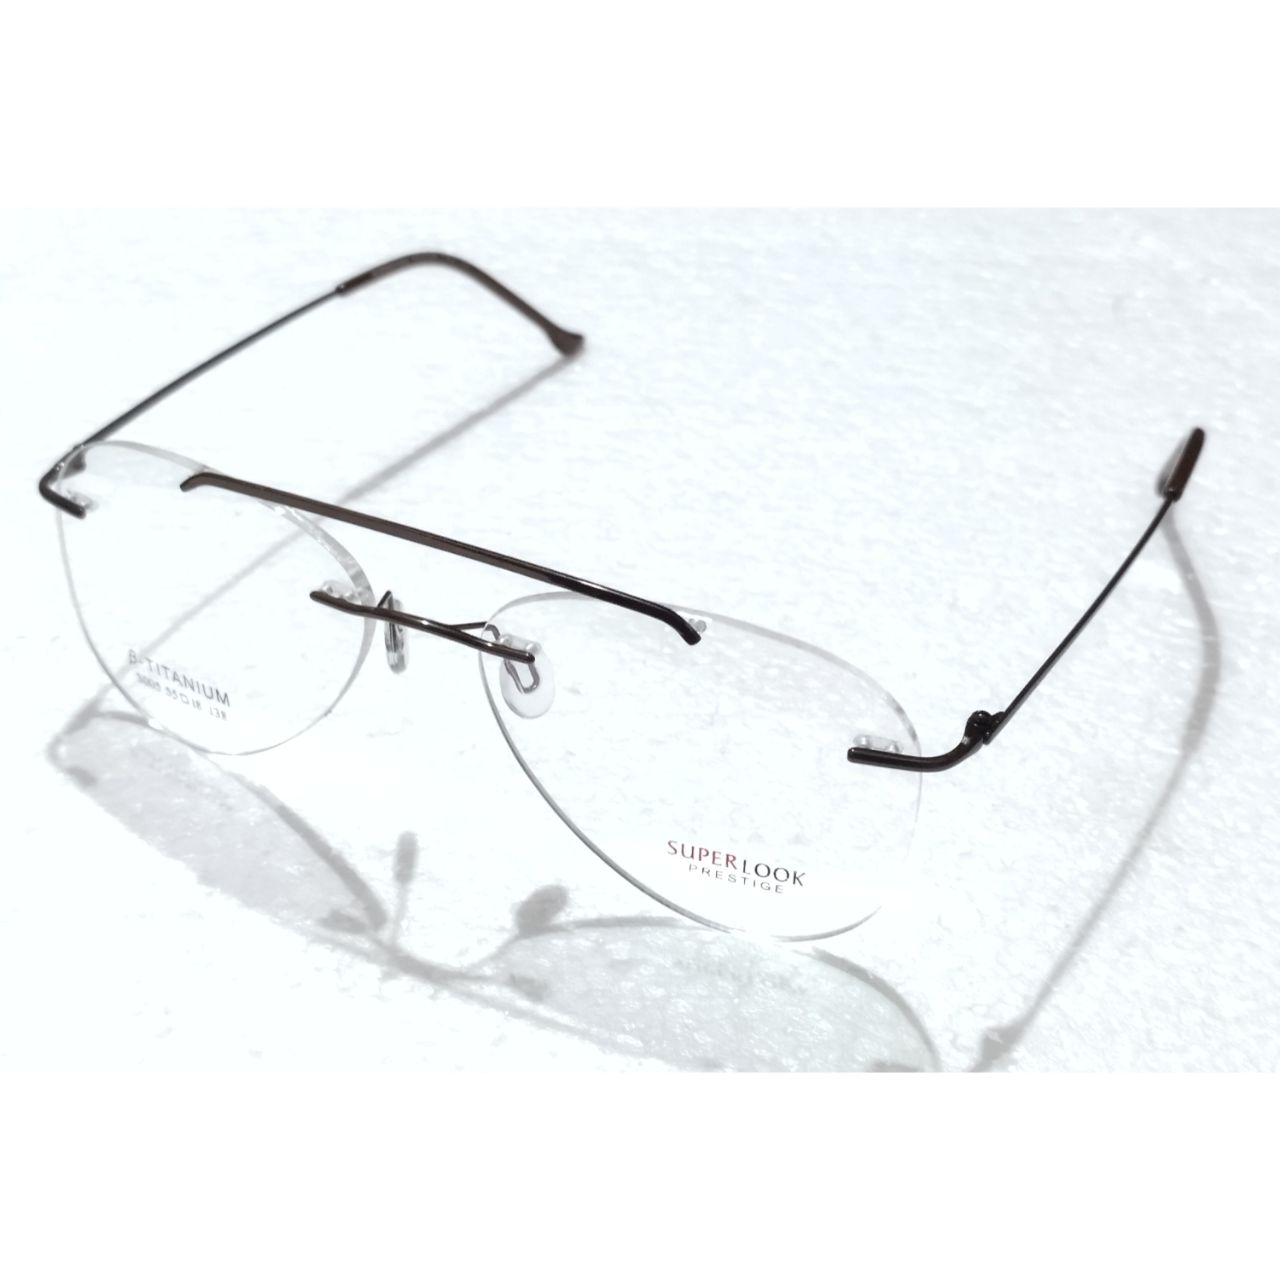 Brown Aviator Shape Rimless Glasses Frameless Specs